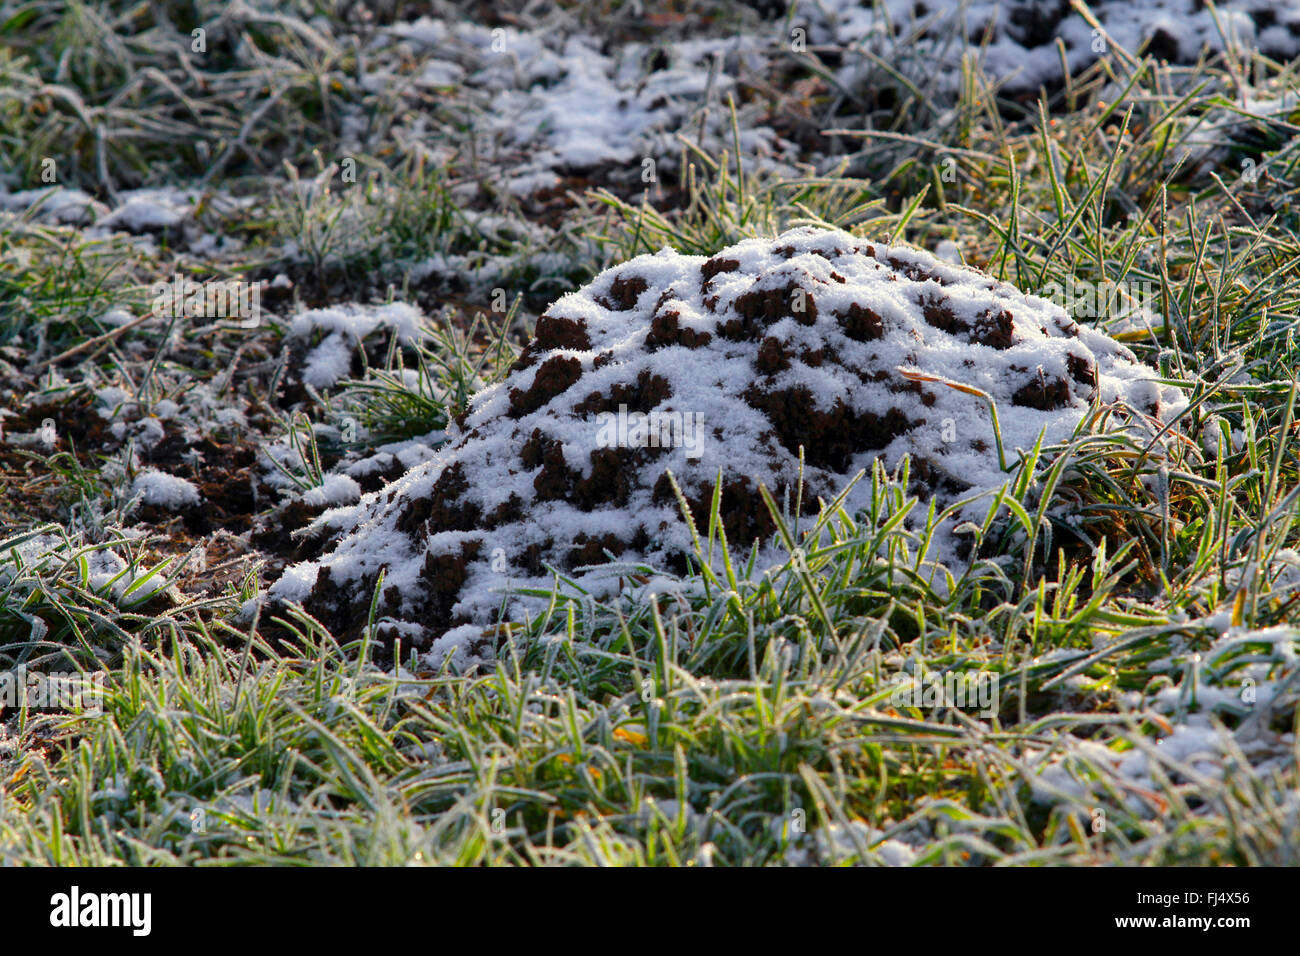 Unione mole, comune mole, Northern mole (Talpa europaea), molehill con brina, Germania Foto Stock